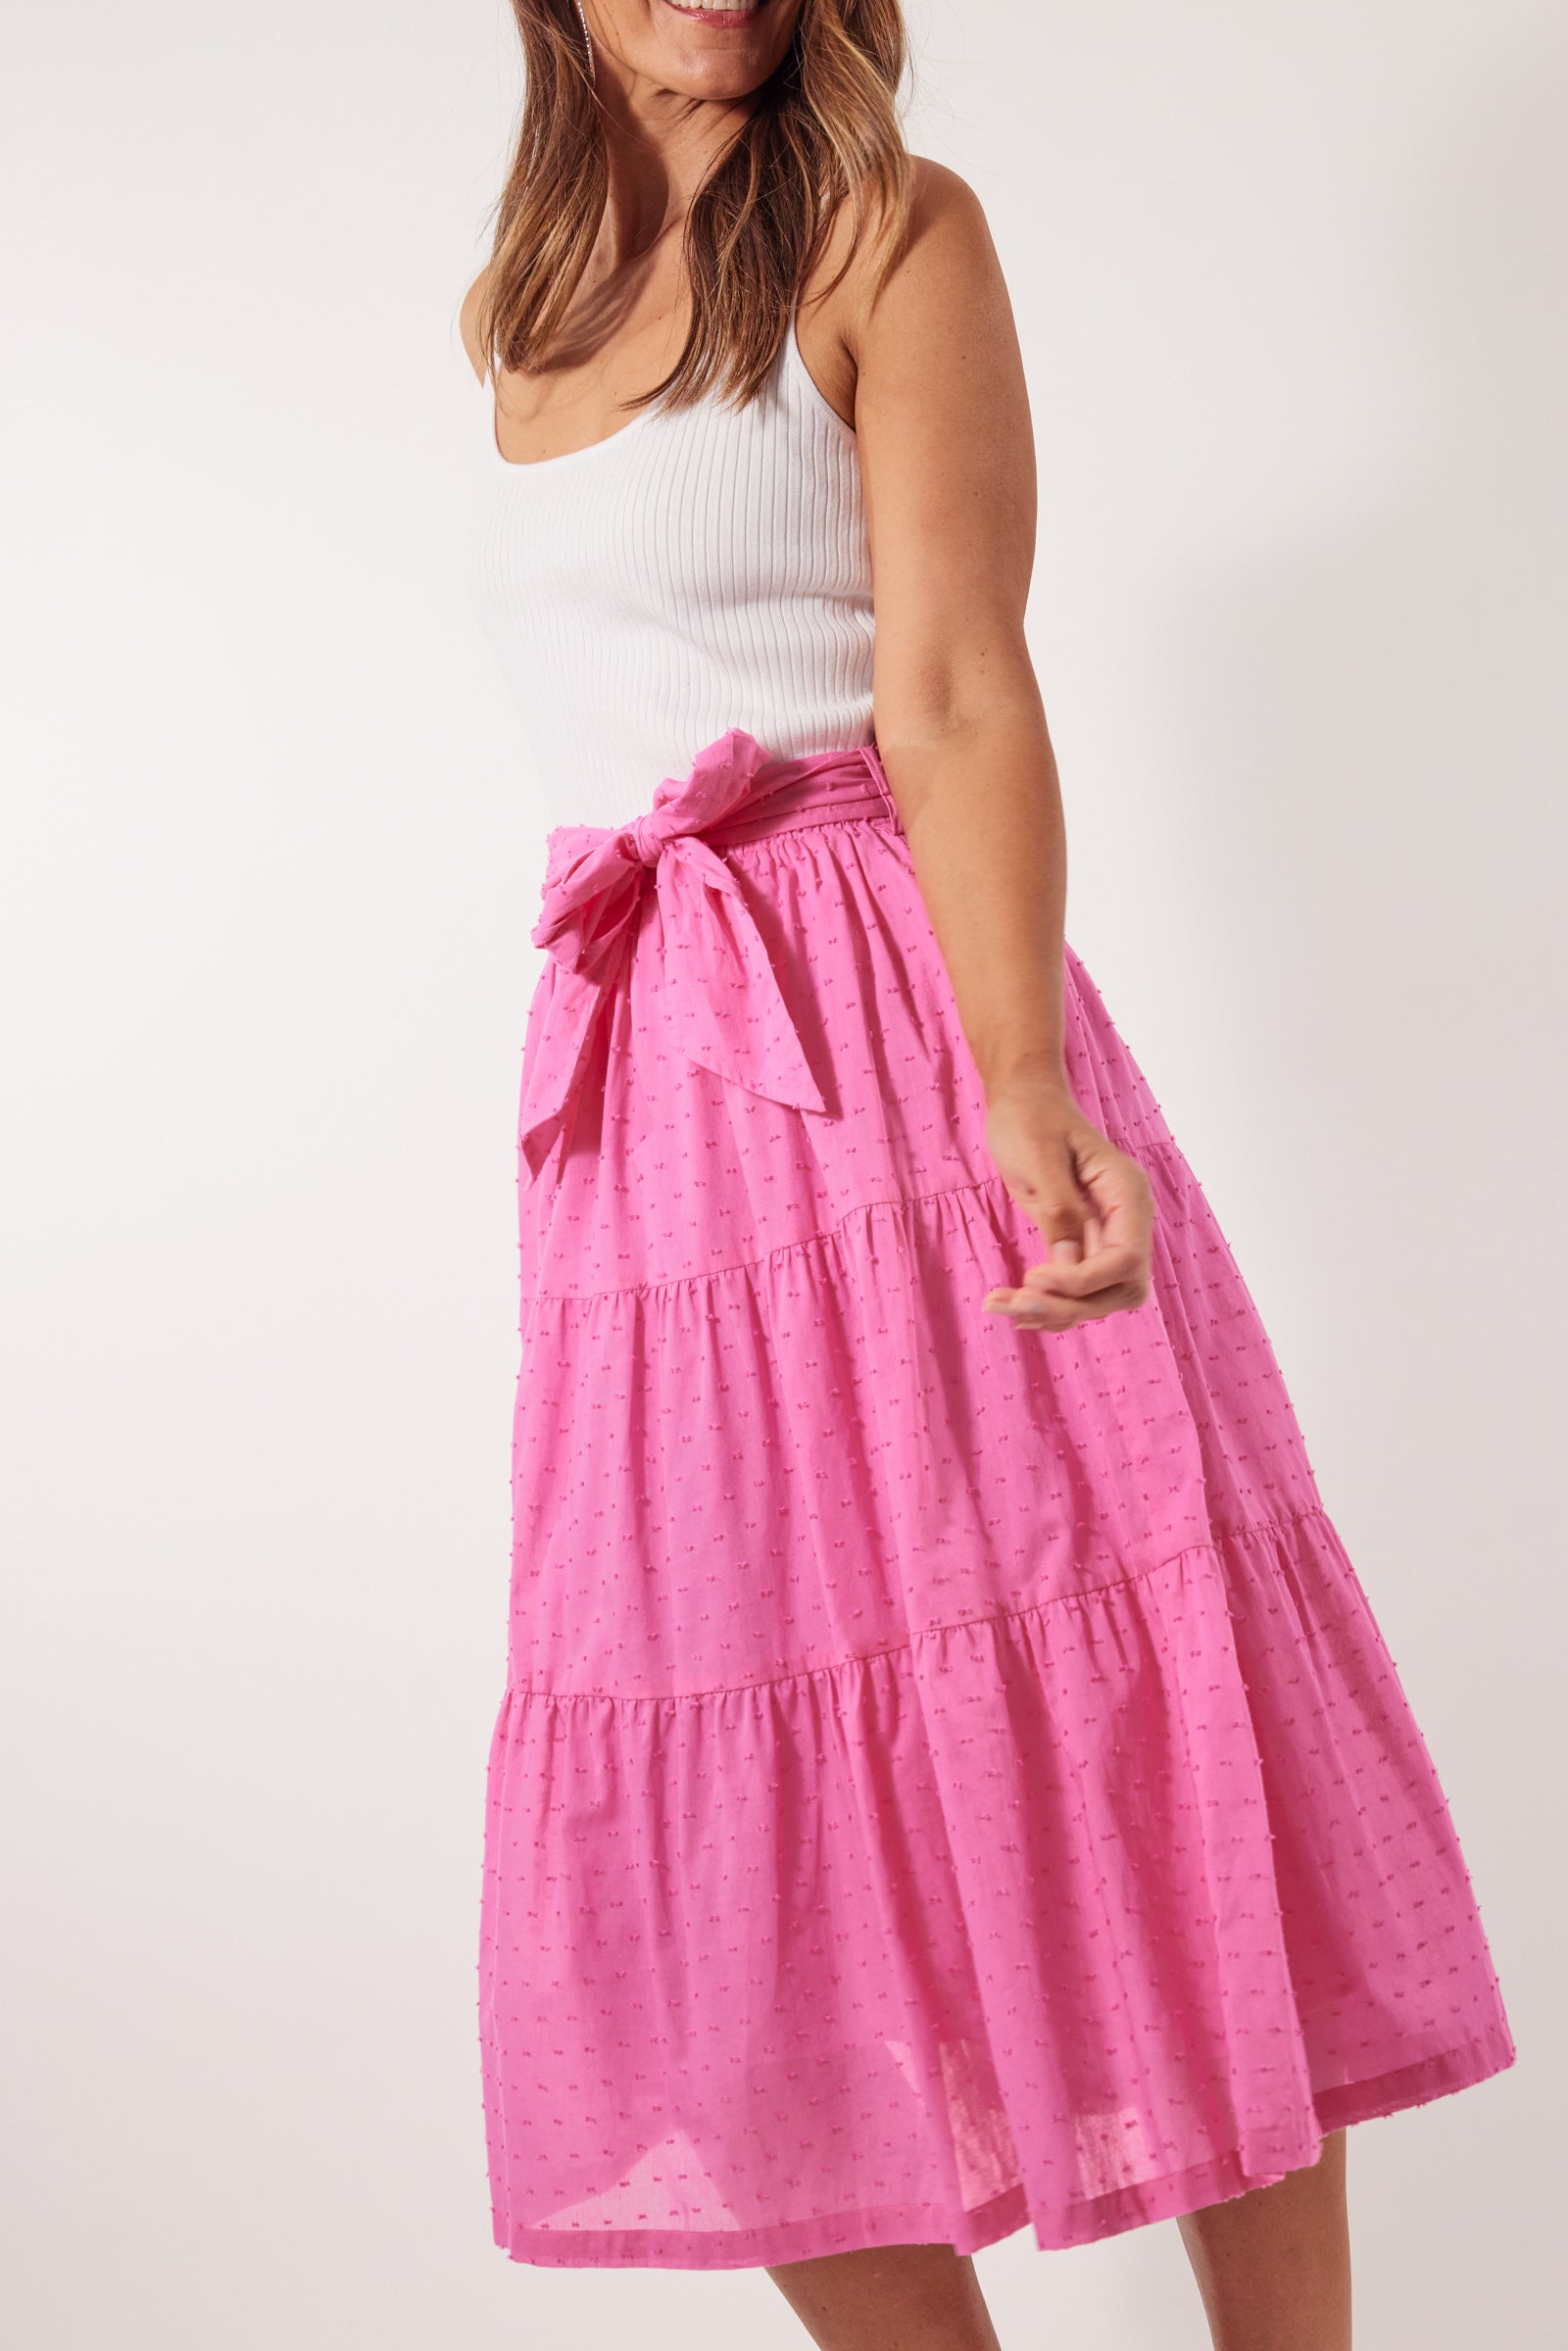 Soiree Skirt - Camelia - Isle of Mine Clothing - Skirt Mid